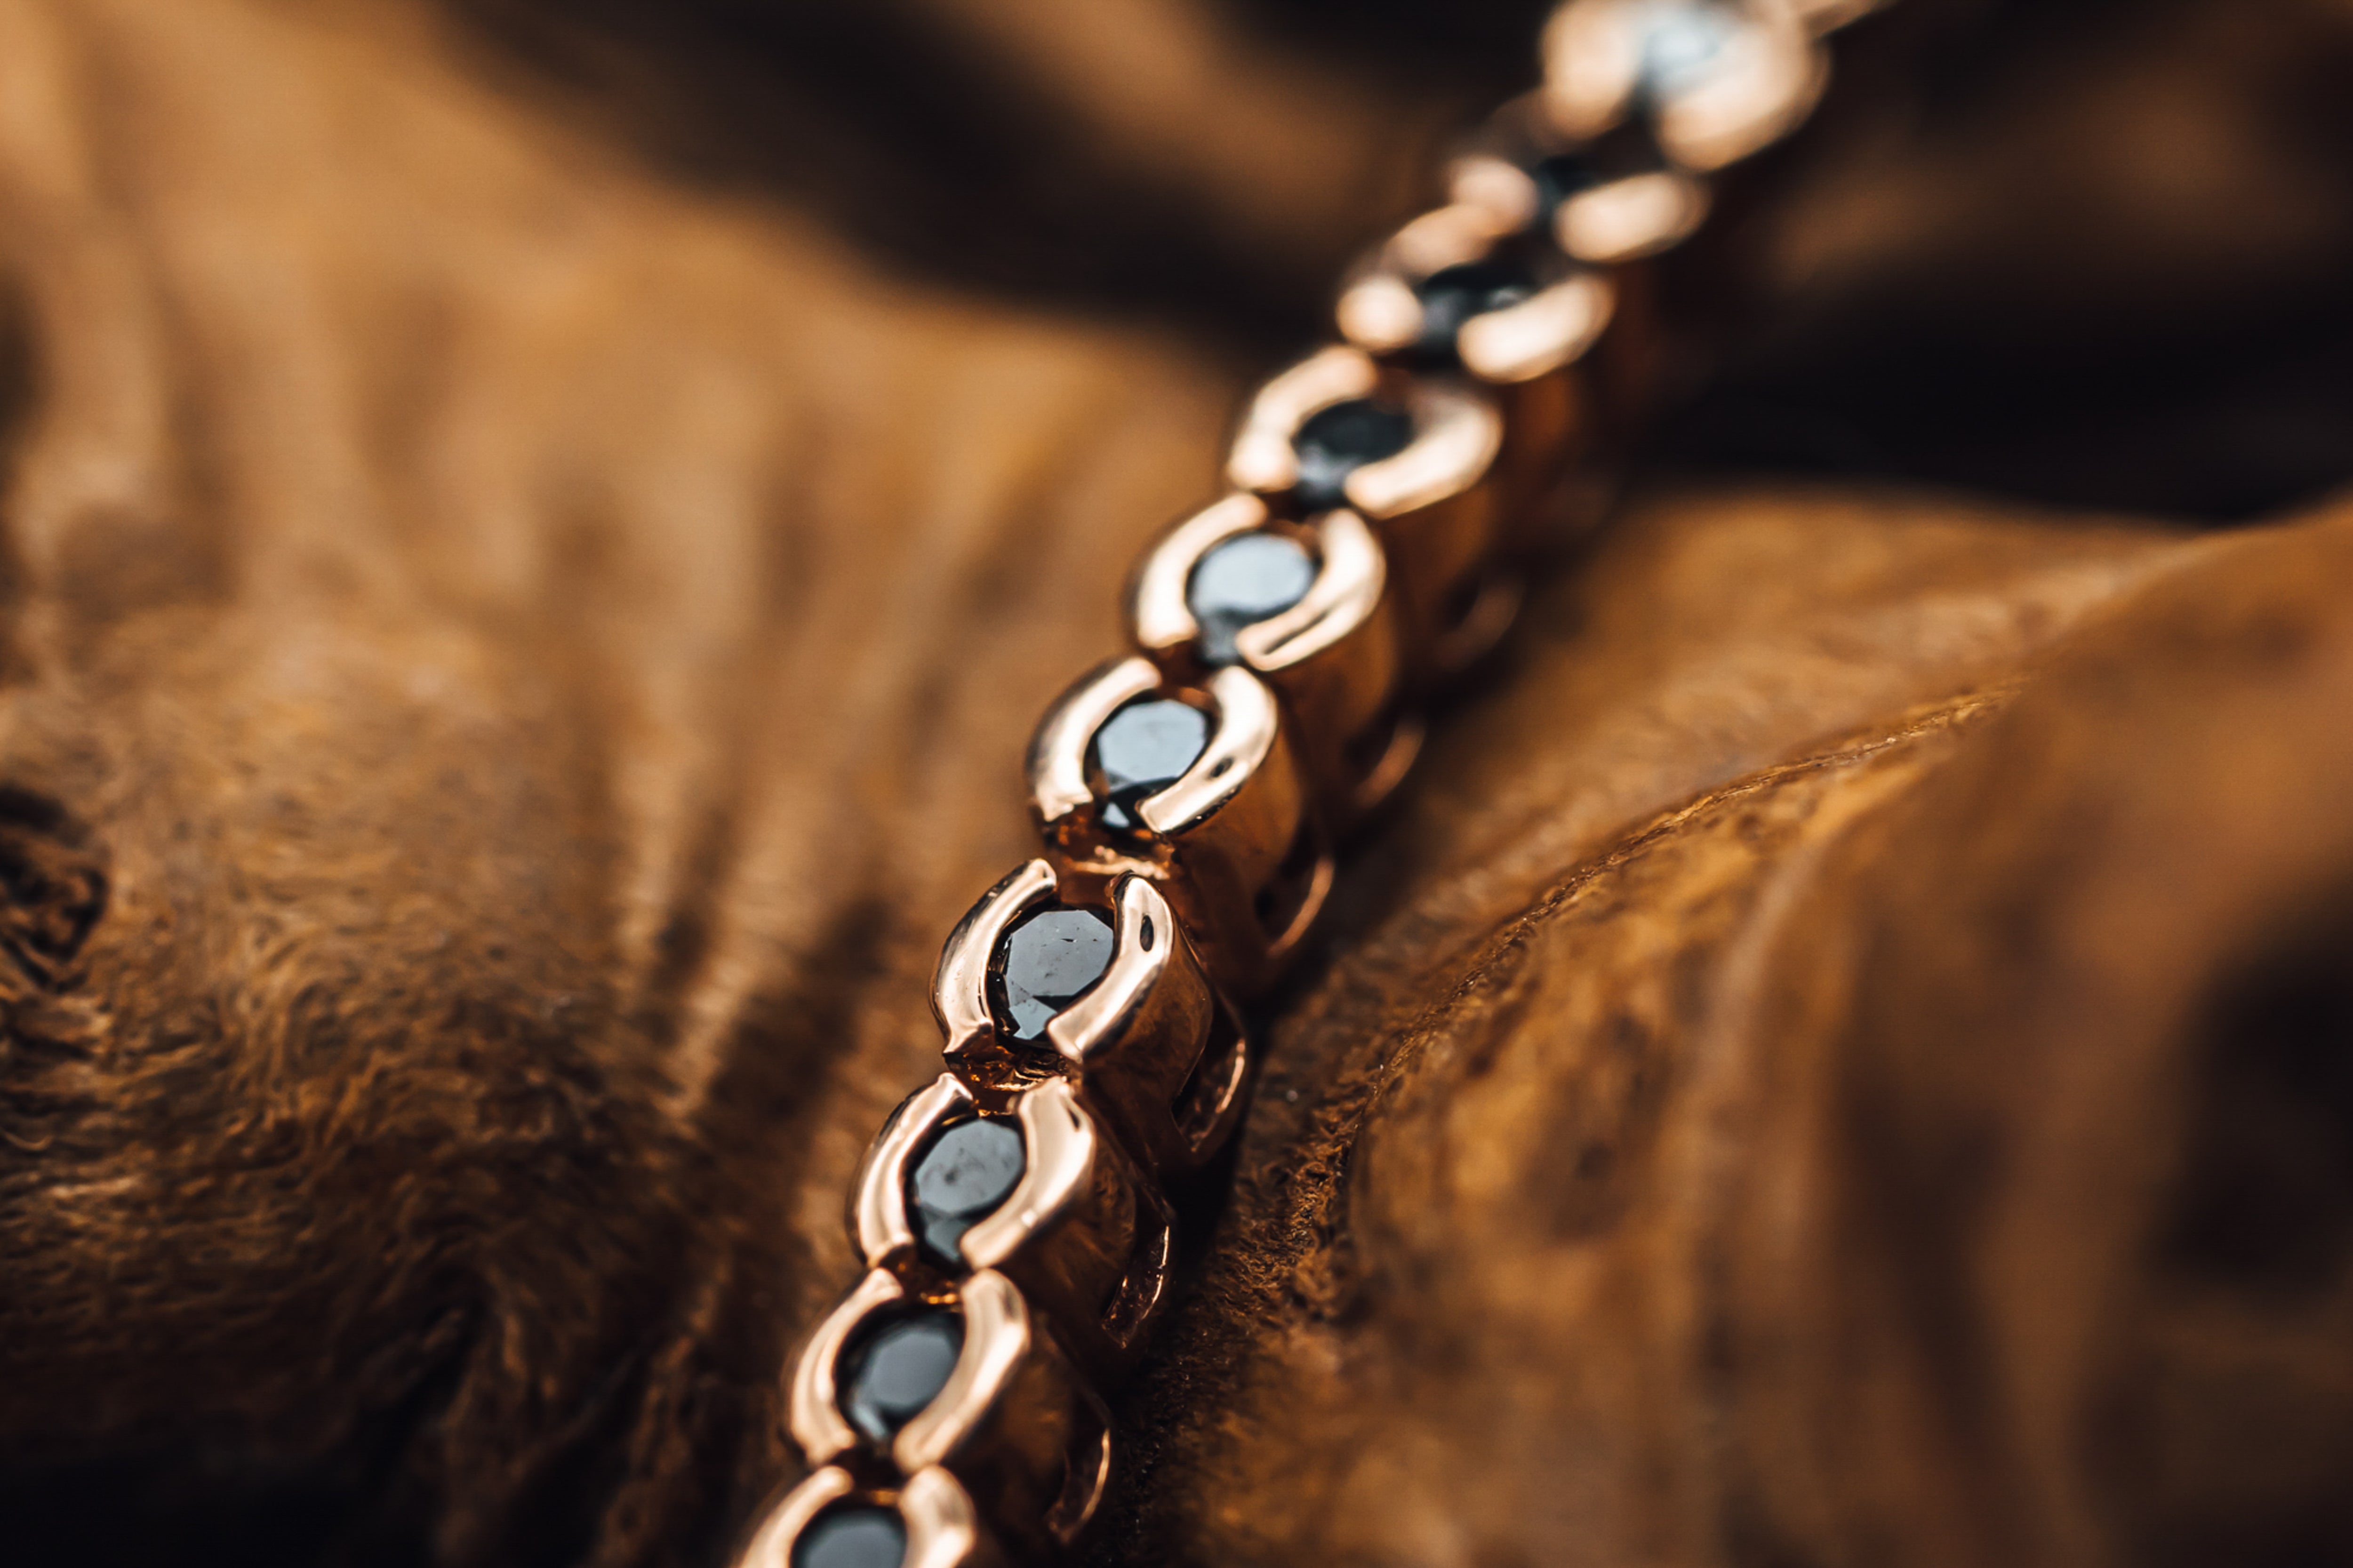 Adjustable 14k Gold Bead Bracelet with Black Cord, 4mm, Men and Women's  Bracelet – Crystal Casman